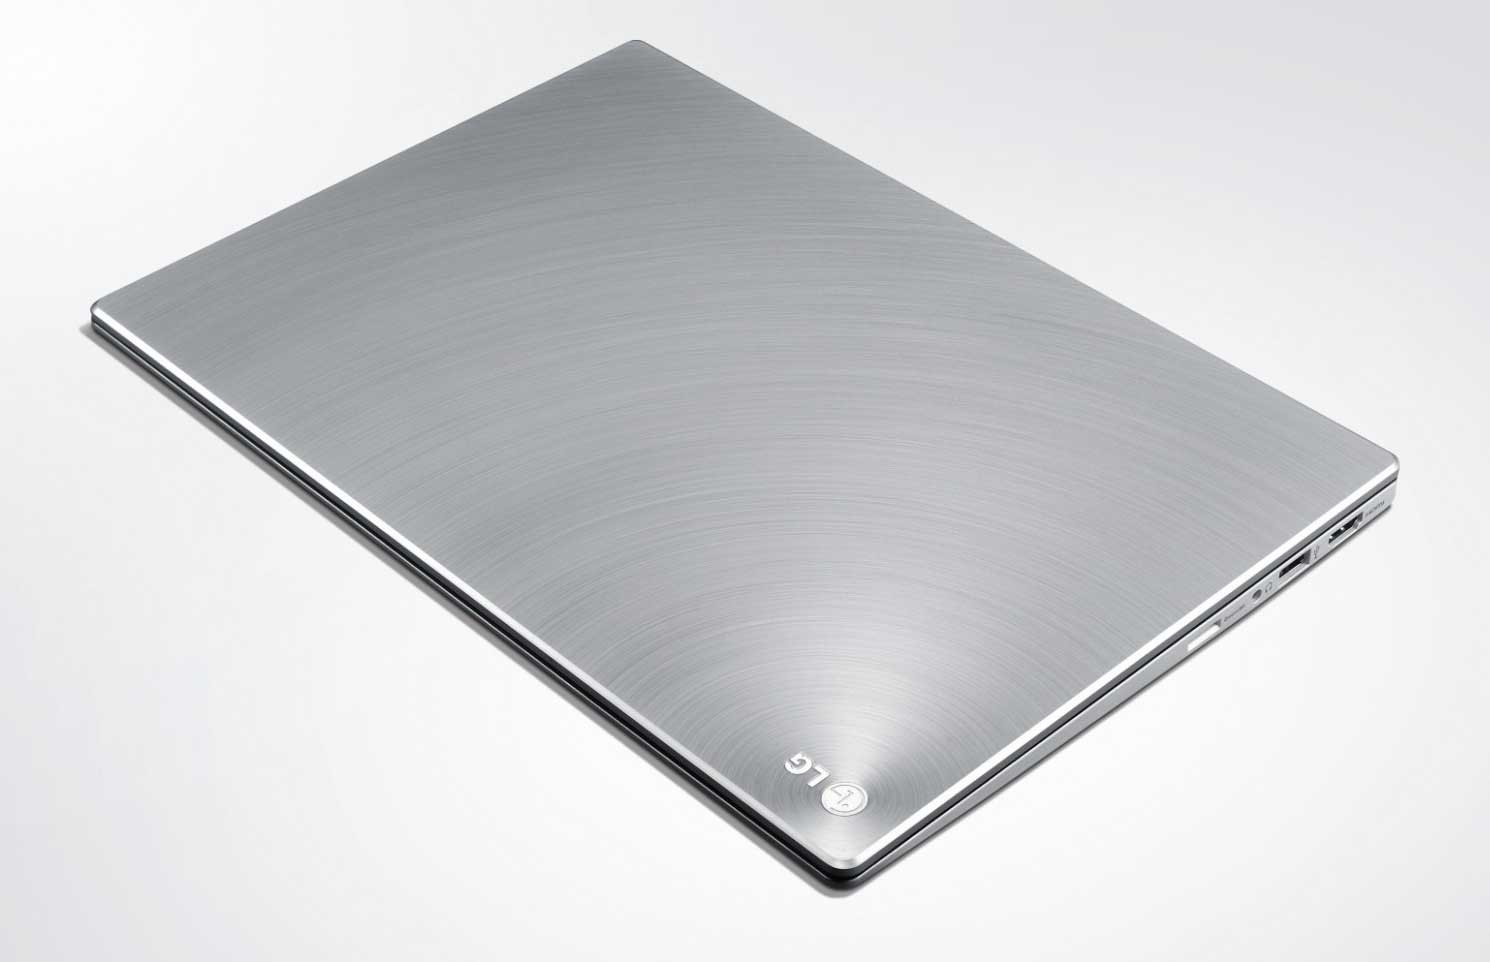 LG_Xnote_Z330_Ultrabook.jpg